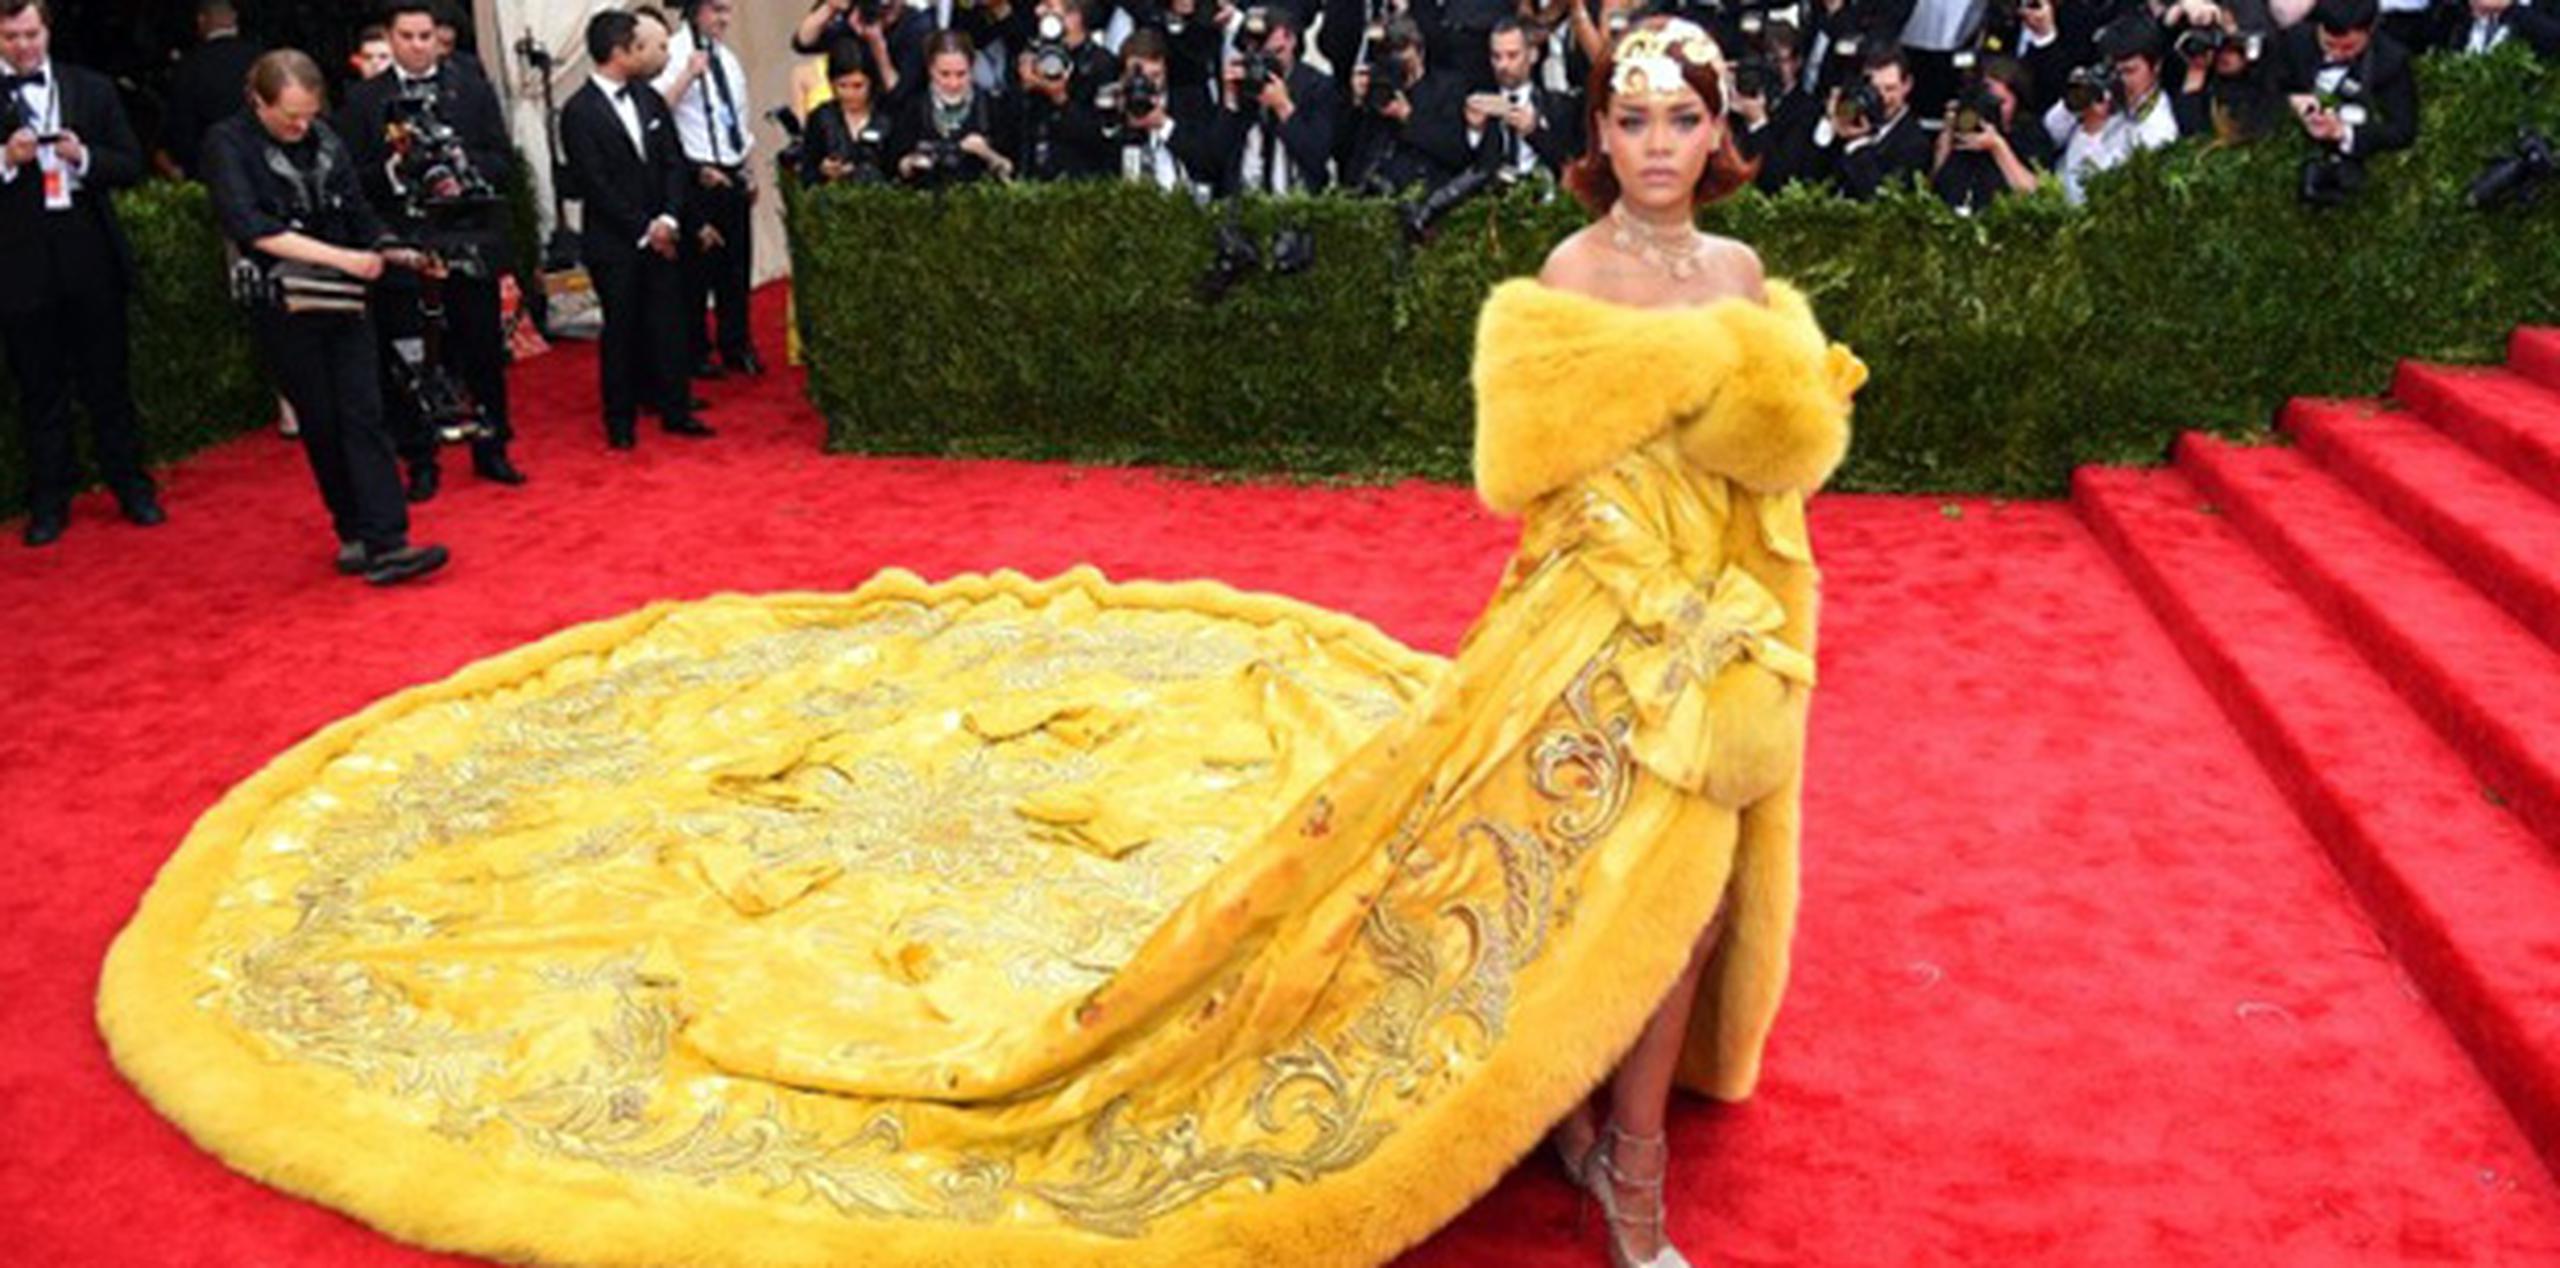 Rihanna consiguió acaparar la atención y conquistar la alfombra roja de la Gala del Met cuando apareció ataviada con una gran capa amarilla con ribetes de piel y bordados florales dorados, y una cola tan larga que requería tres asistentes. (AFP)